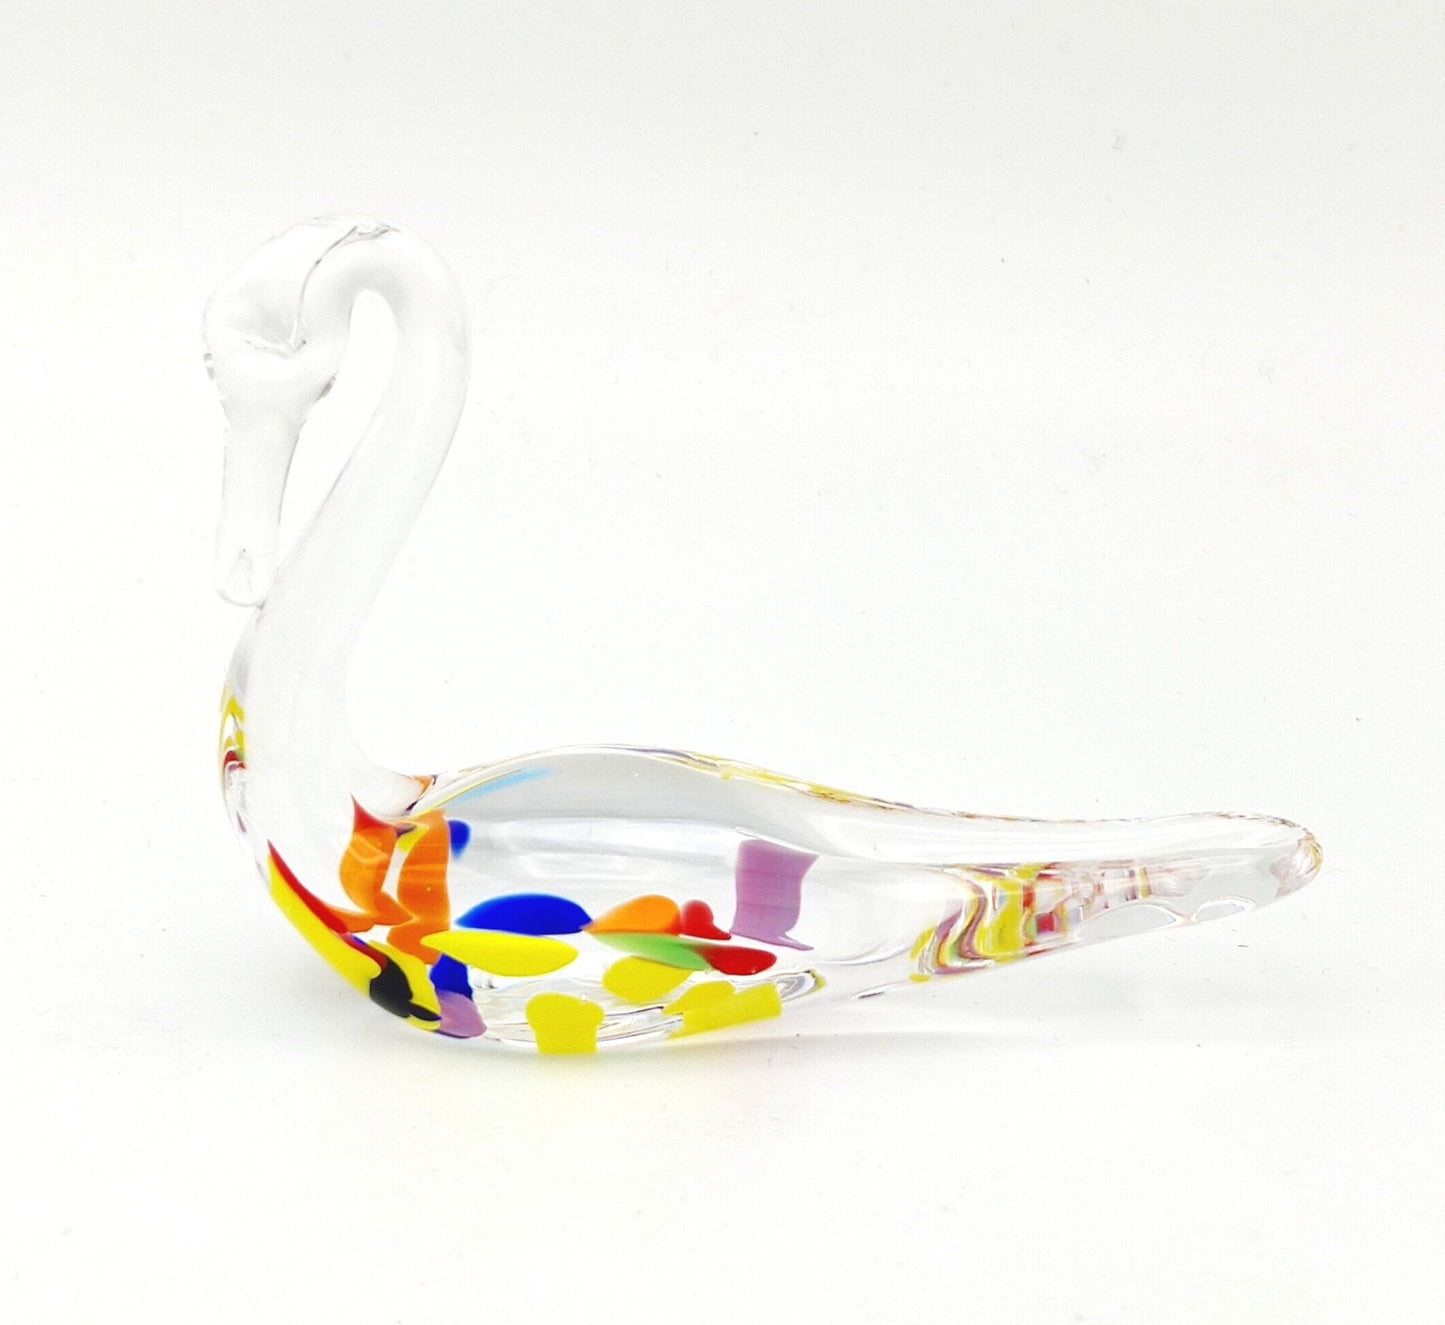 The Irish Handmade Glass Wildflower Glass Swan